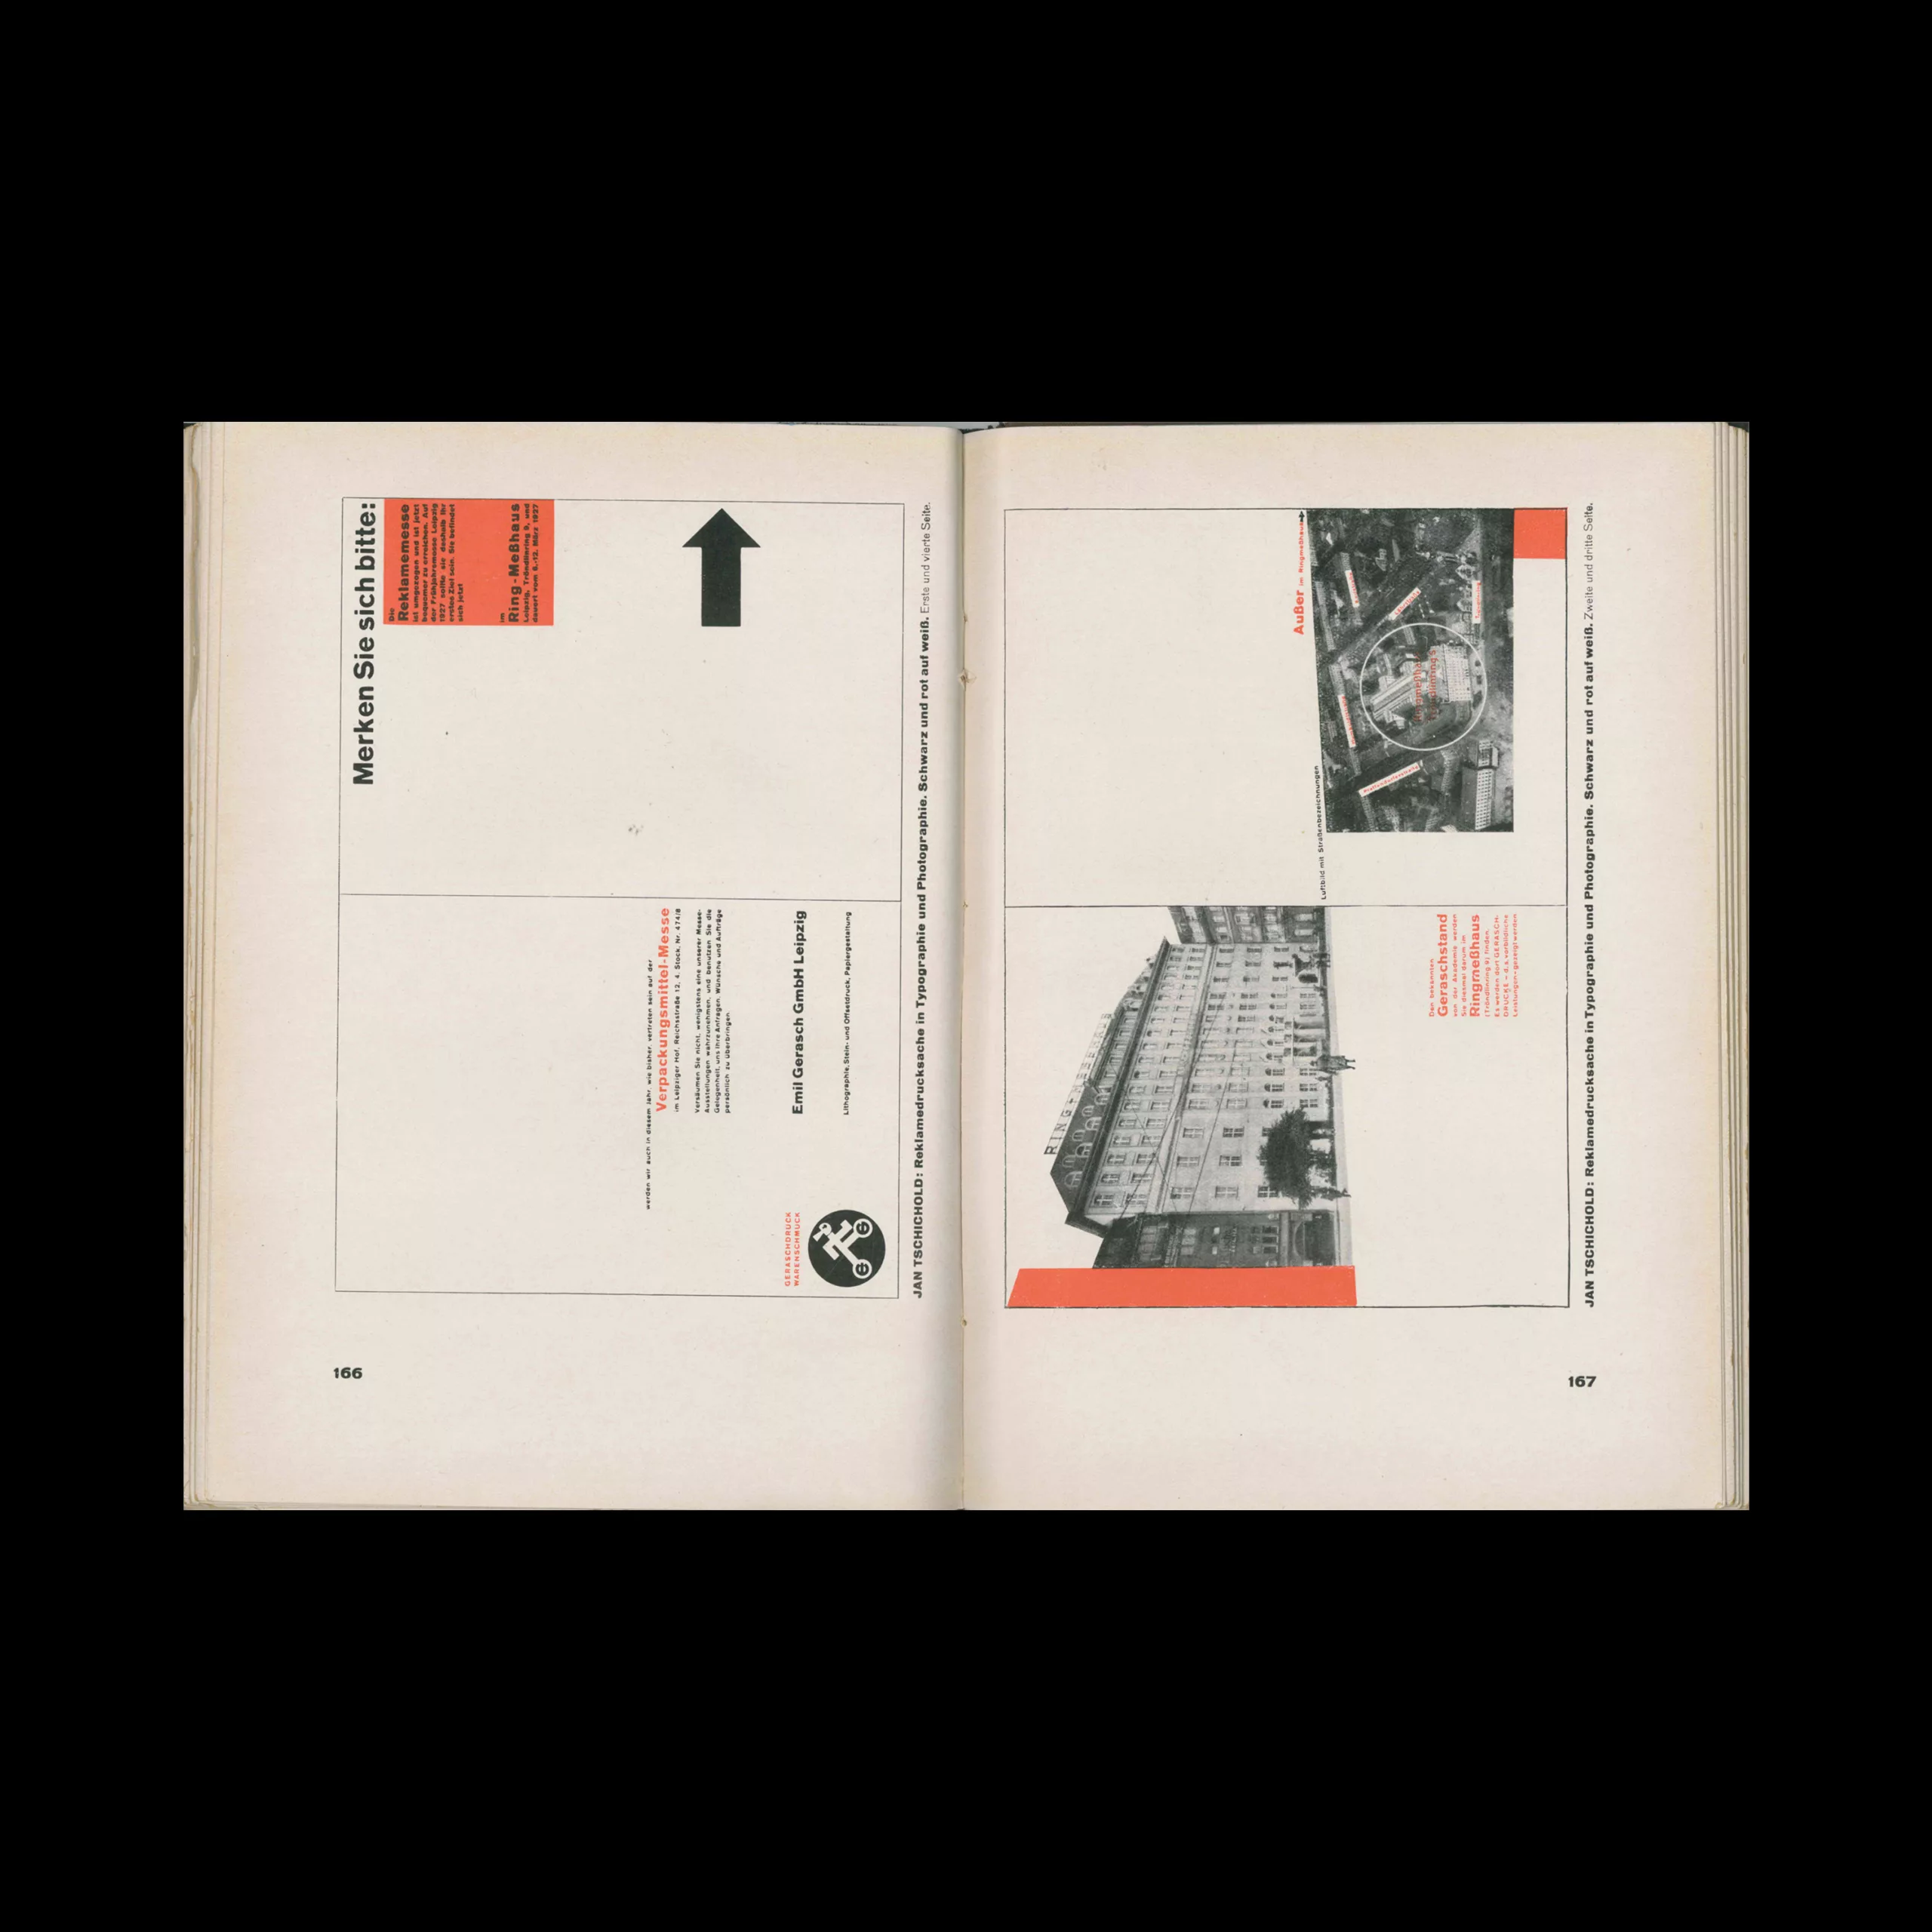 Die Neue Typographie, Bildungsverband der Deutschen Buchdrucker, 1928